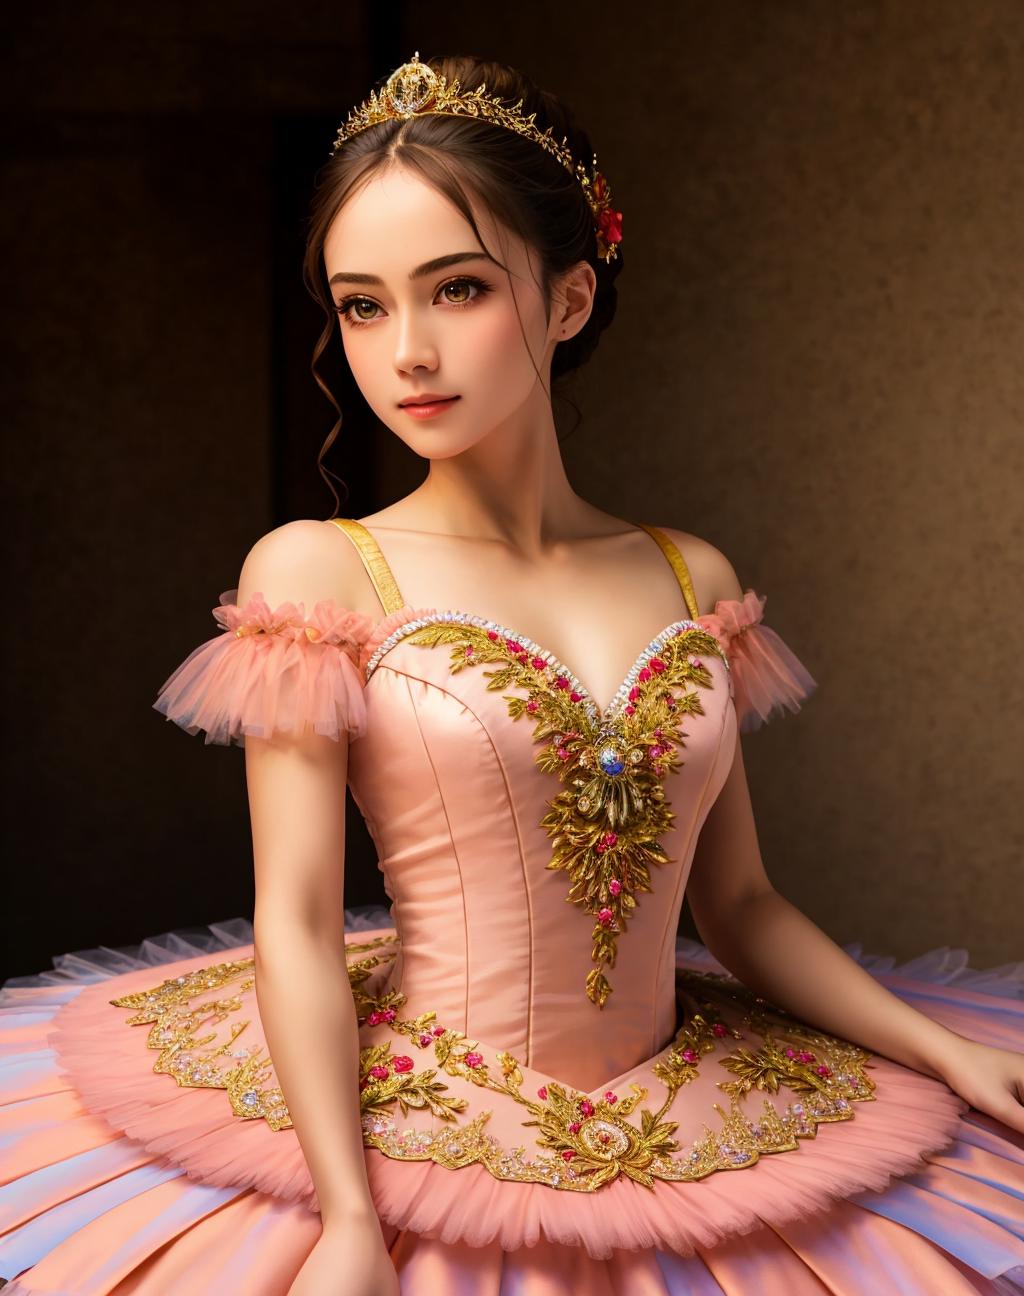 Haute Couture | Prima Ballerina image by EDG